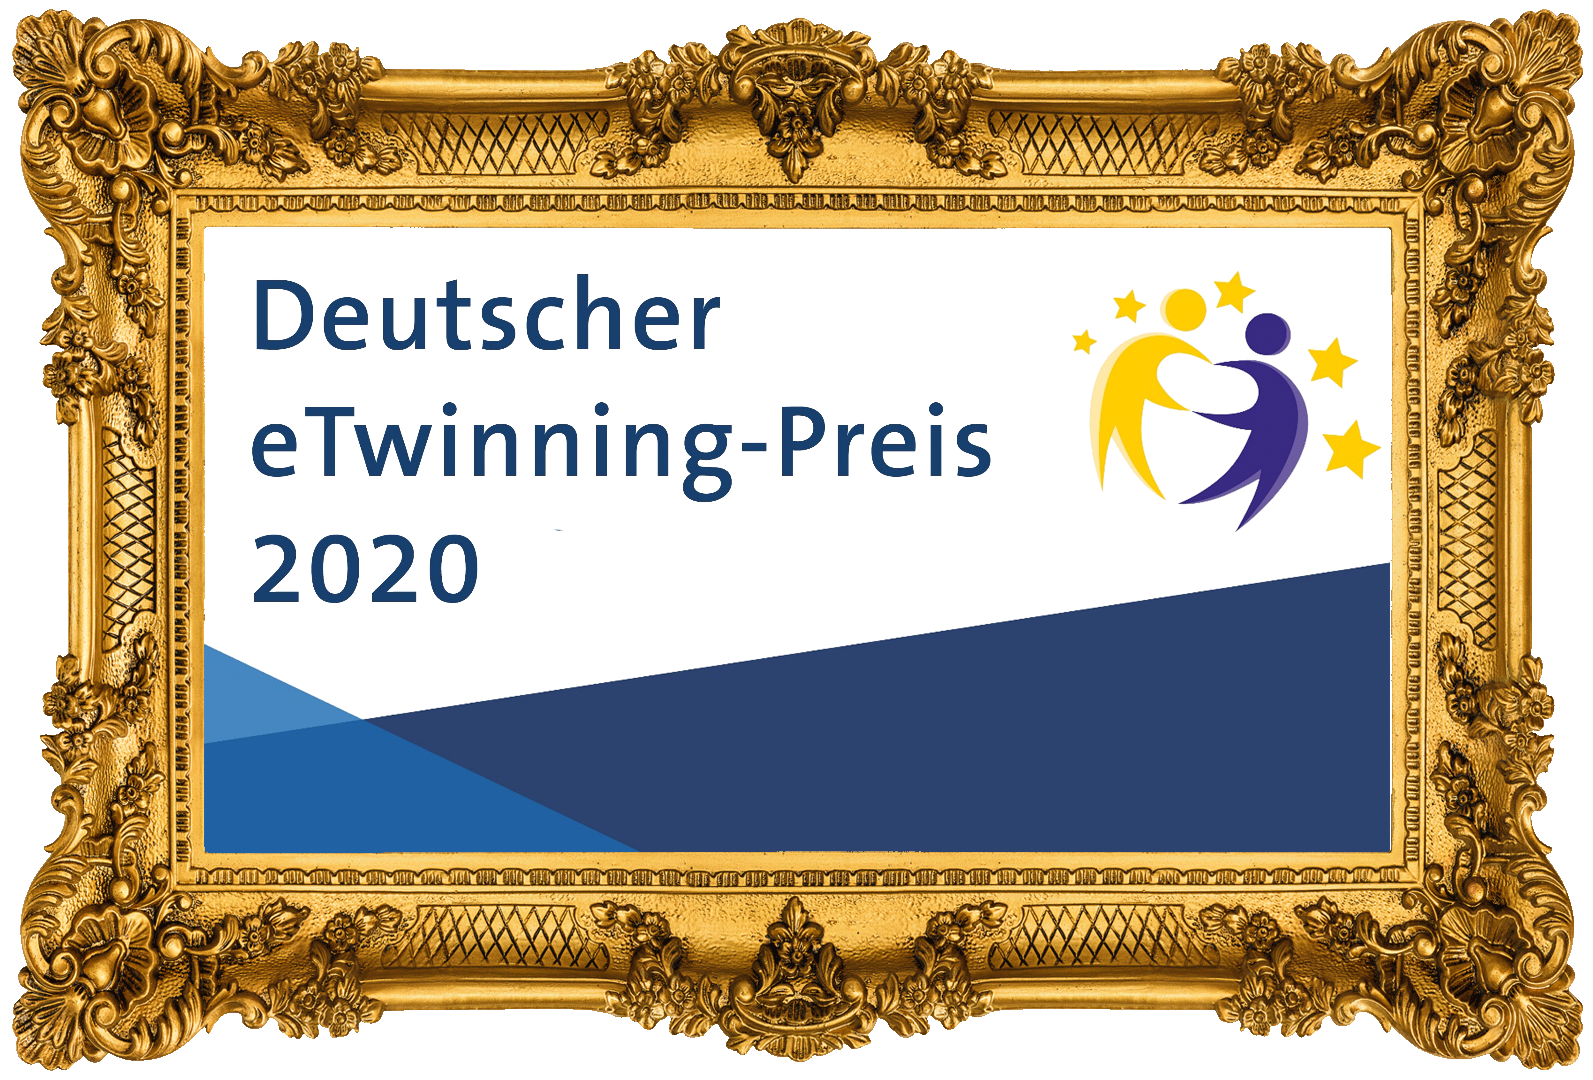 Deutscher eTwinning-Sonderpreis 2020 für Marco Schöber